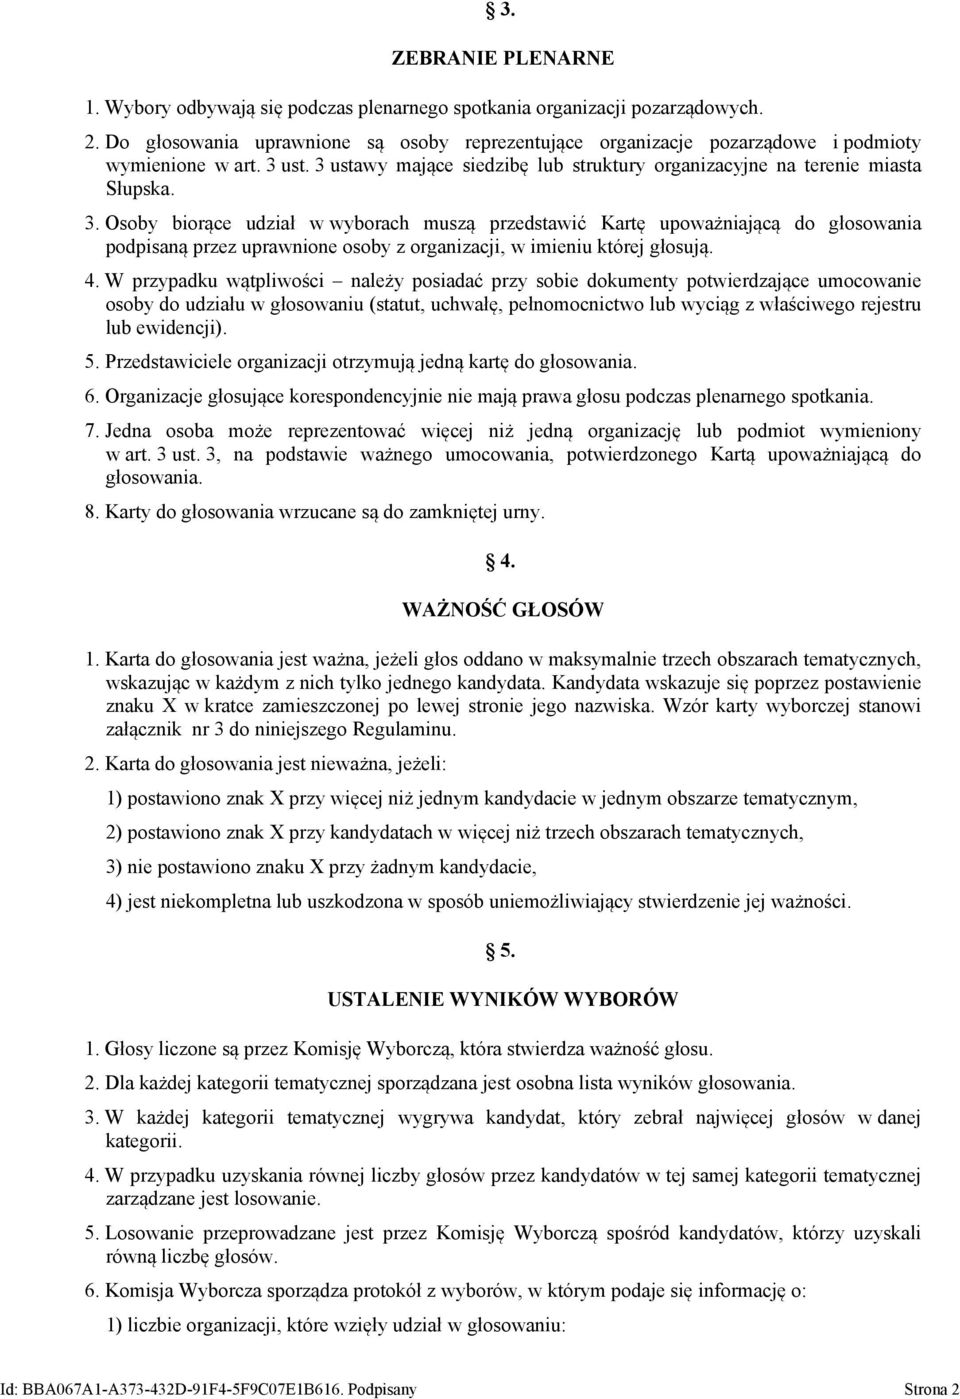 ust. 3 ustawy mające siedzibę lub struktury organizacyjne na terenie miasta Słupska. 3. Osoby biorące udział w wyborach muszą przedstawić Kartę upoważniającą do głosowania podpisaną przez uprawnione osoby z organizacji, w imieniu której głosują.